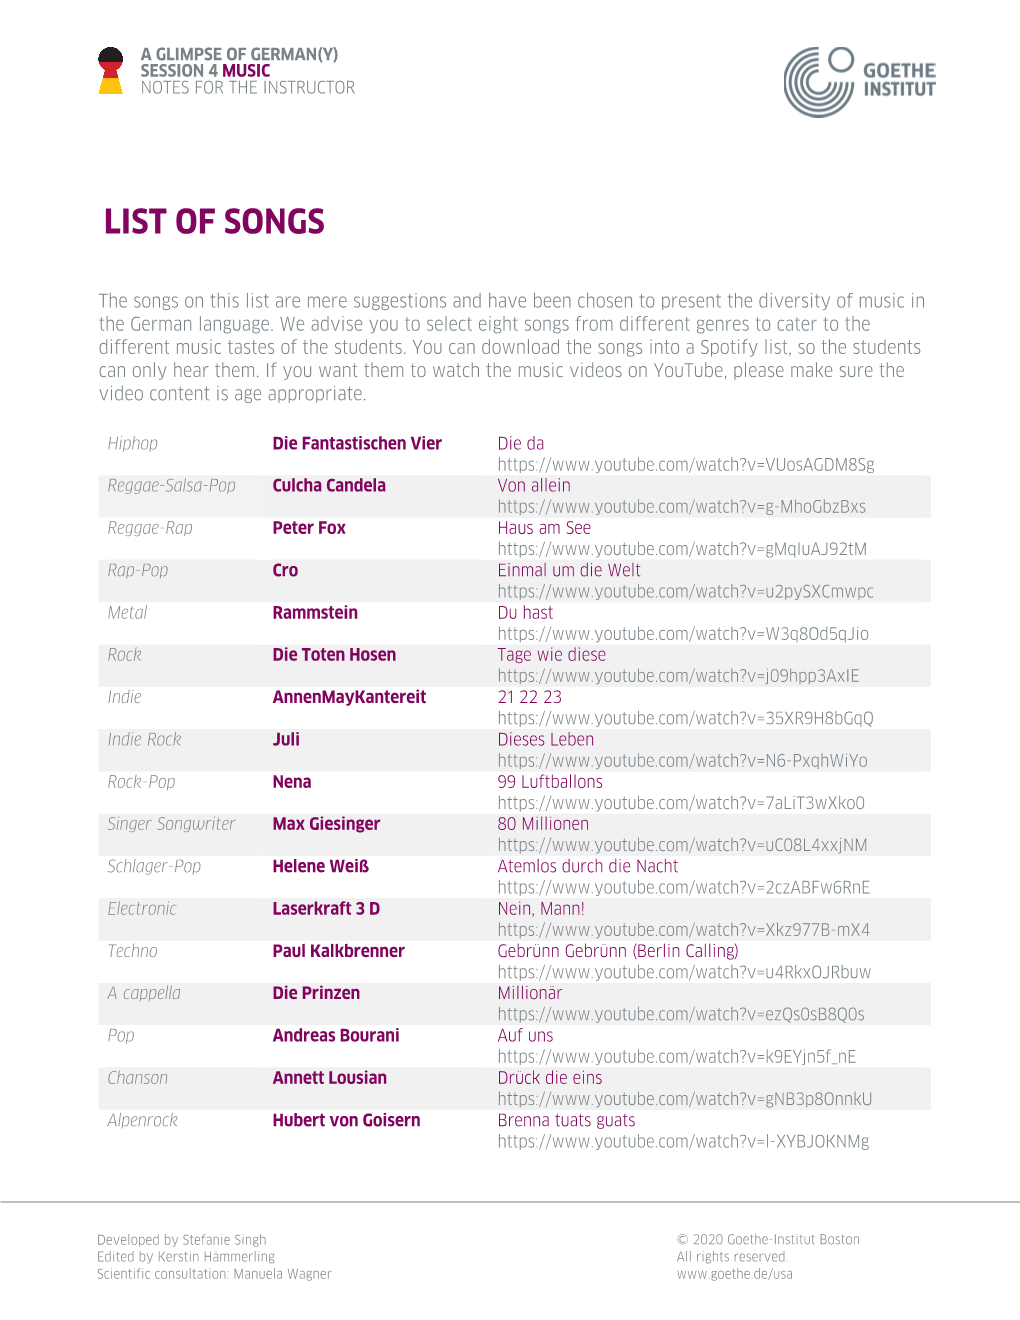 List of Songs